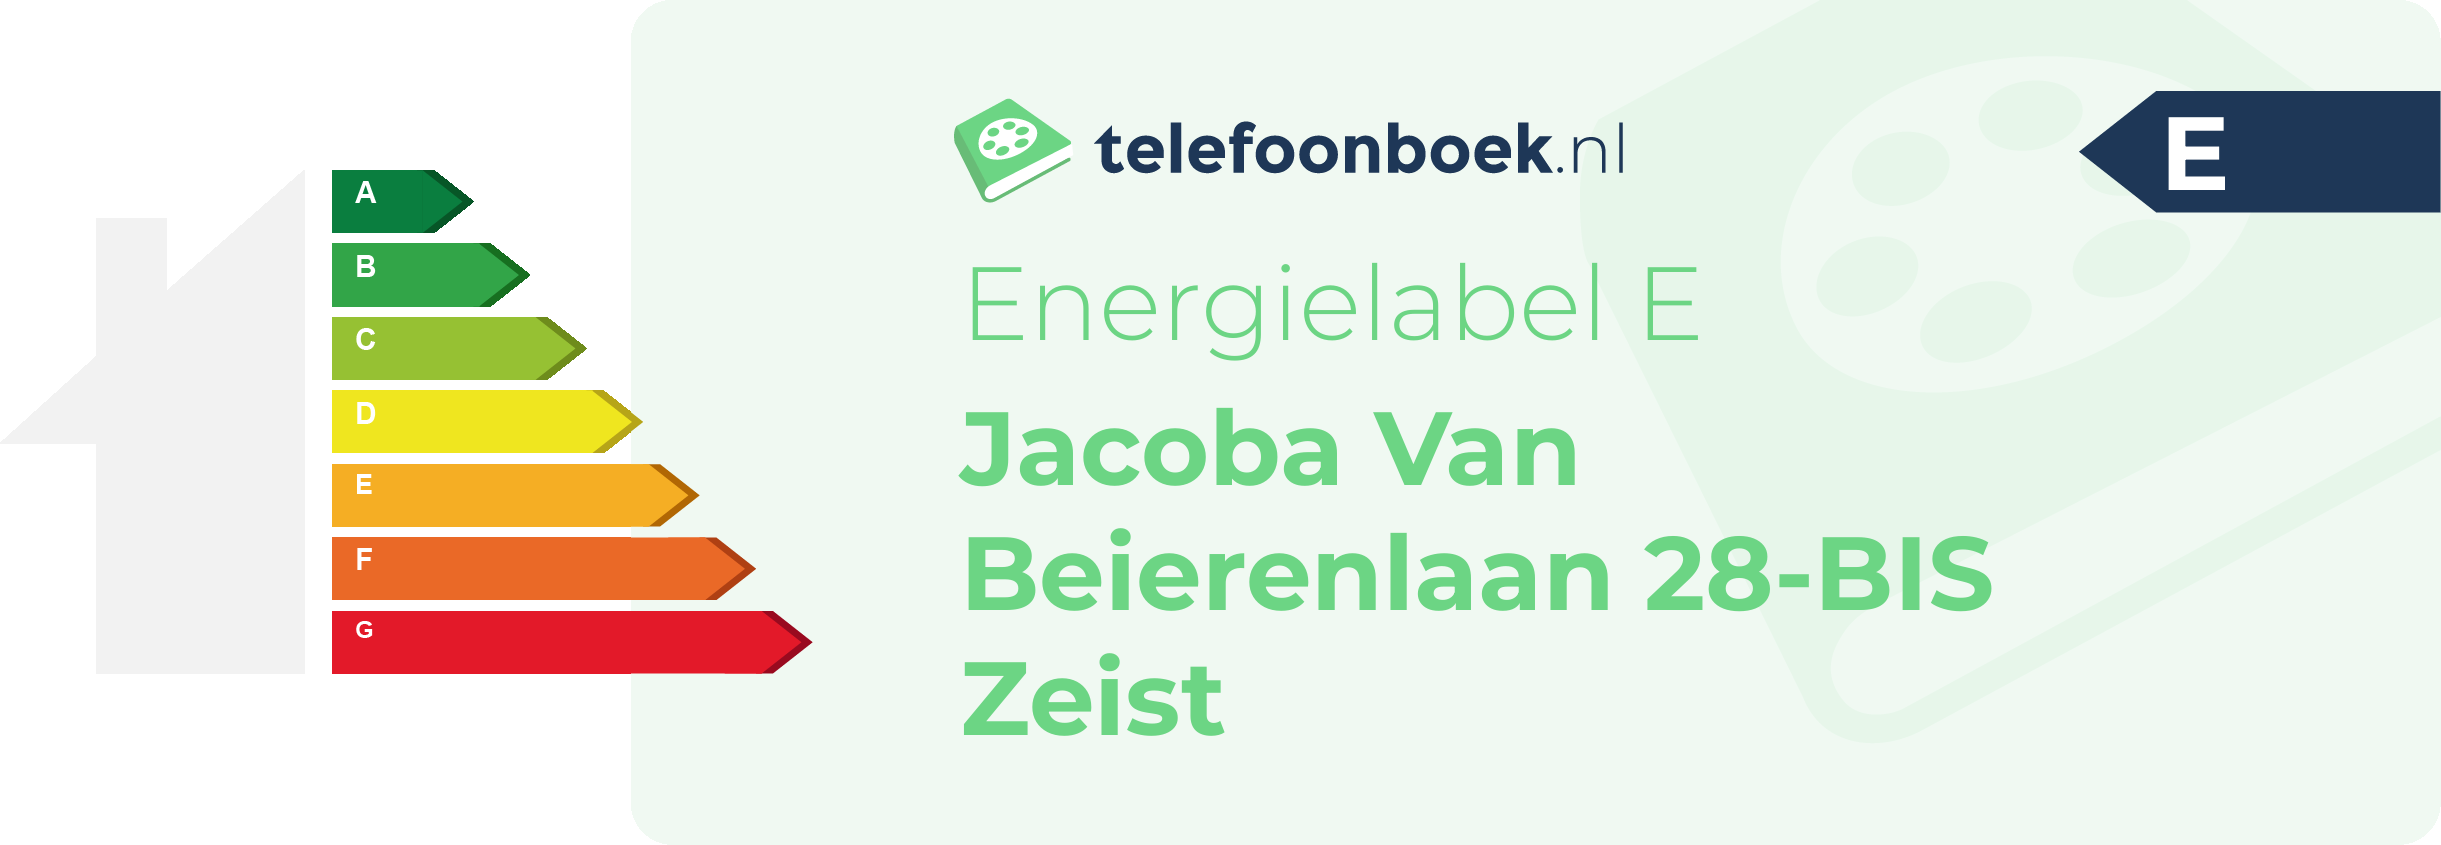 Energielabel Jacoba Van Beierenlaan 28-BIS Zeist